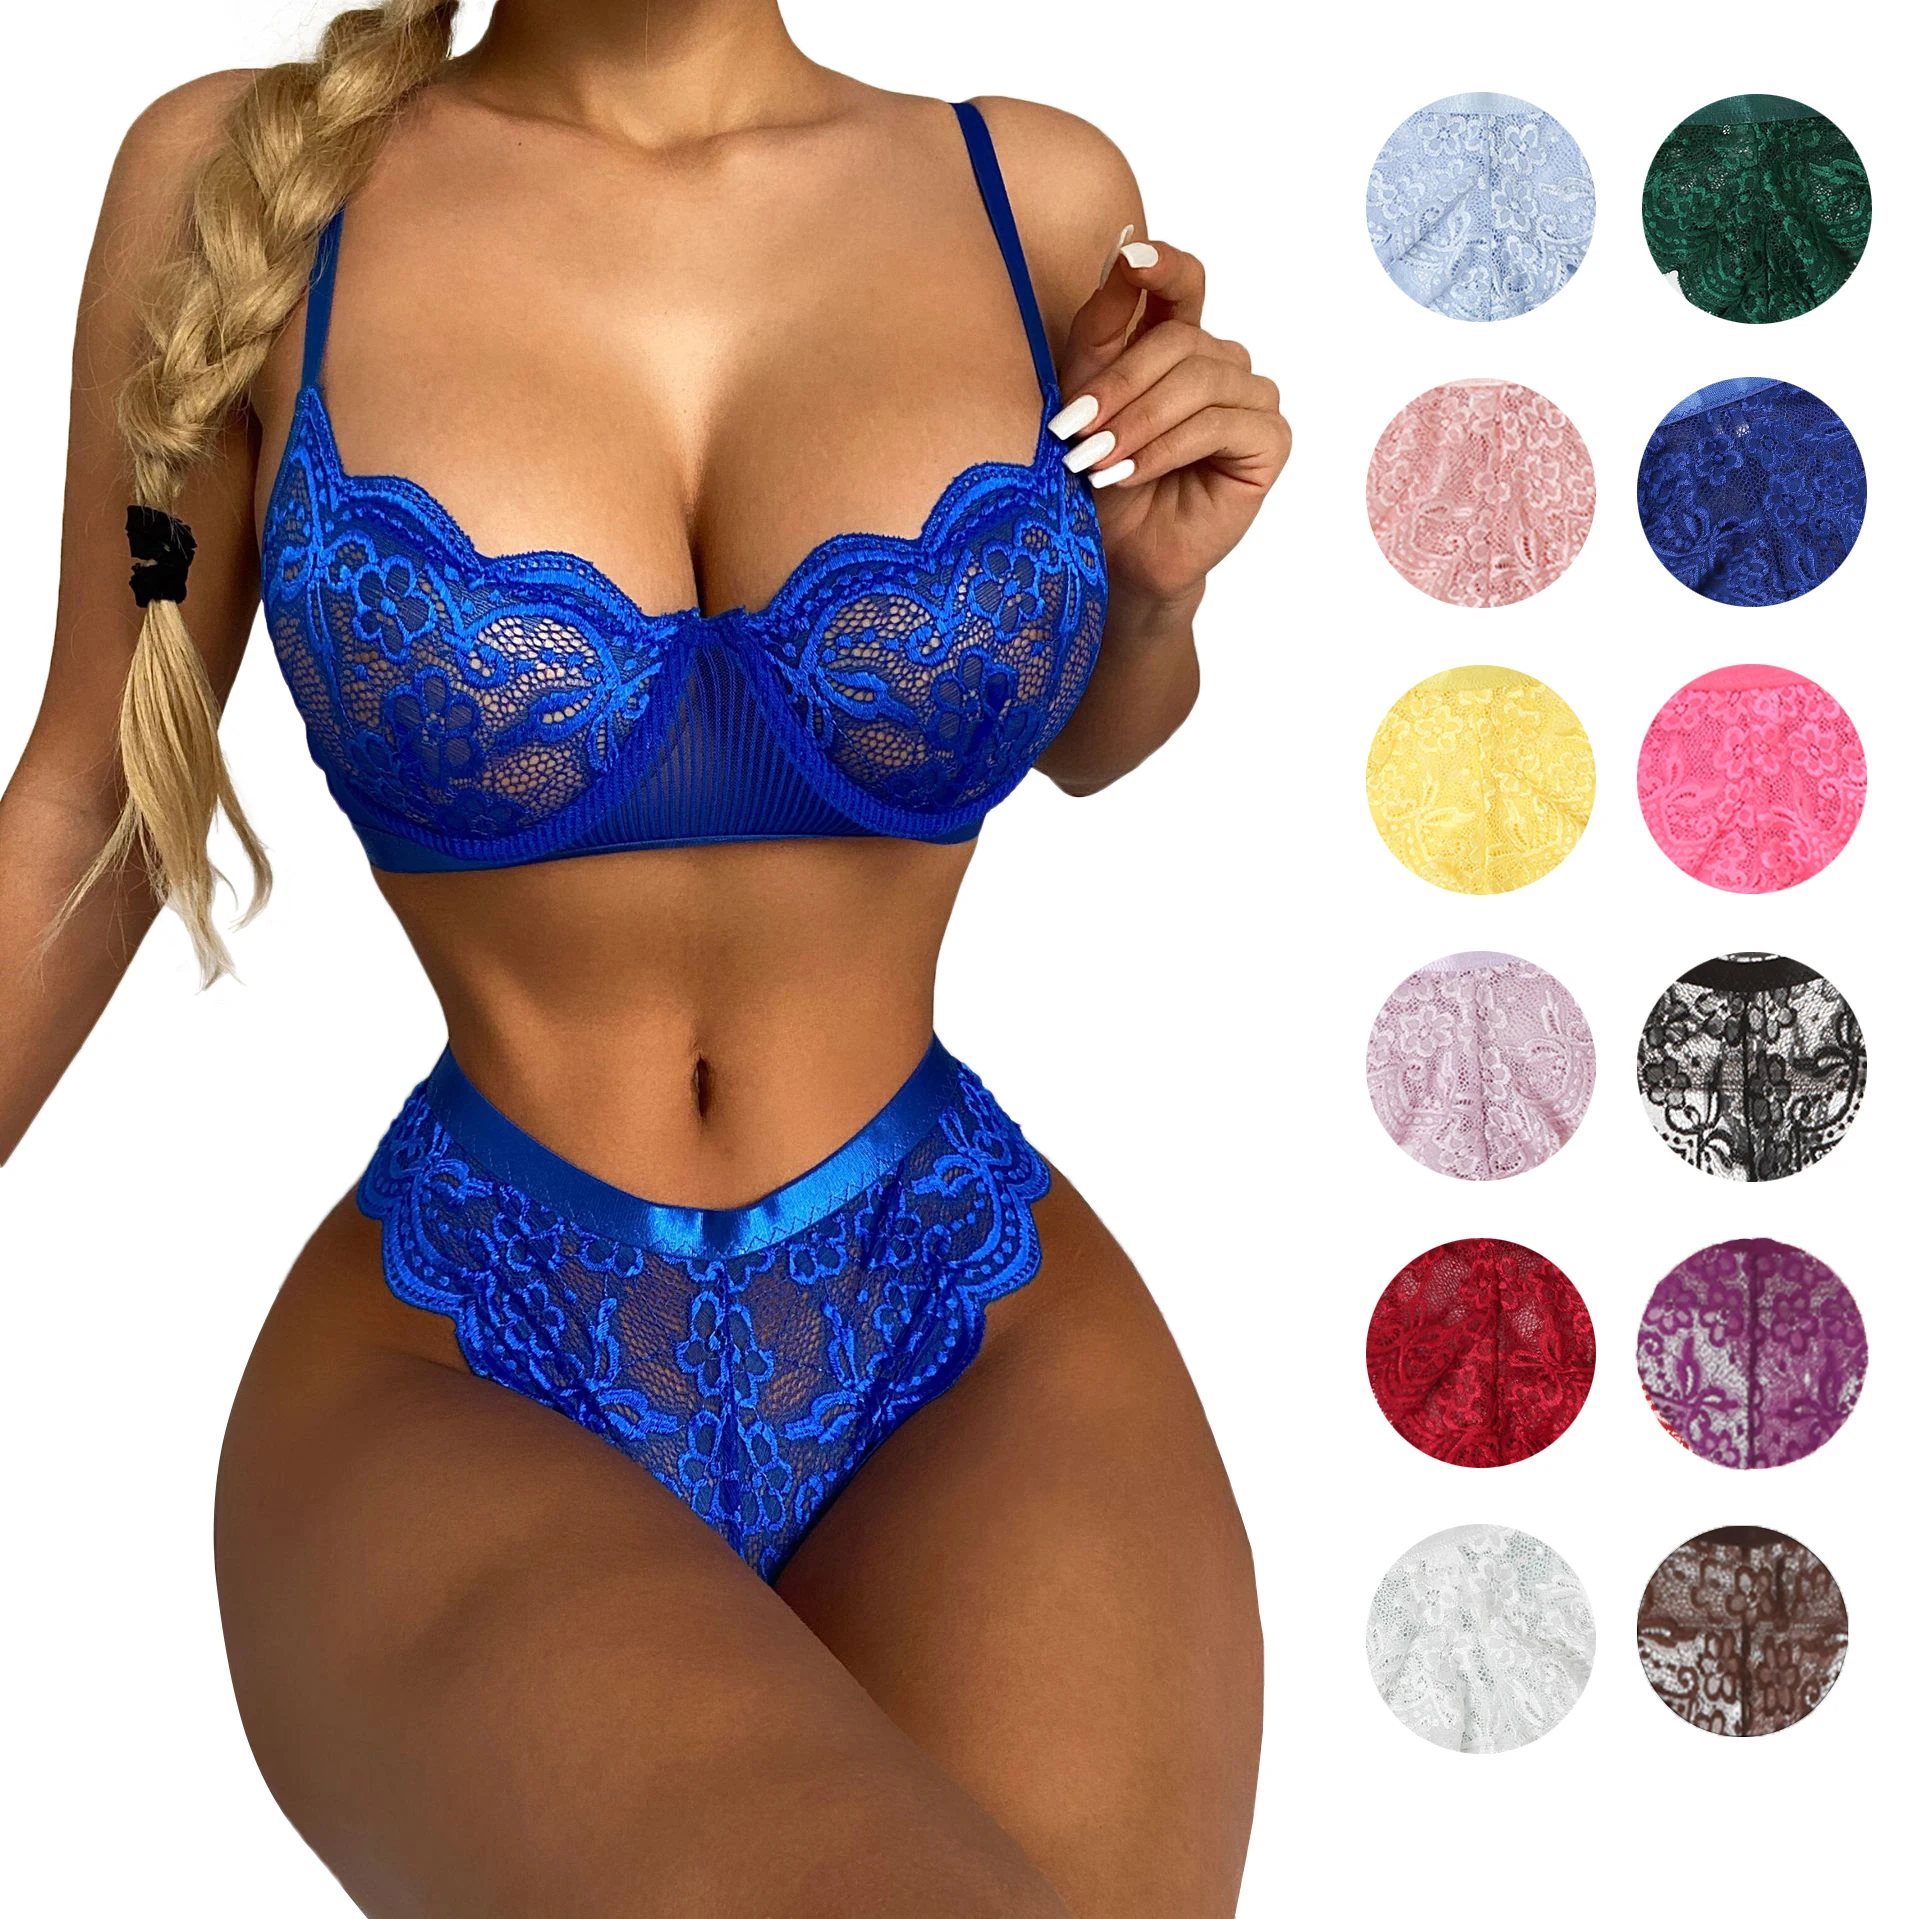 

16 Color Hot Transparent Women Underwire Sexy Lenceria Bra Sets Thong Panties Blue 2 Piece Lace Lingerie Set